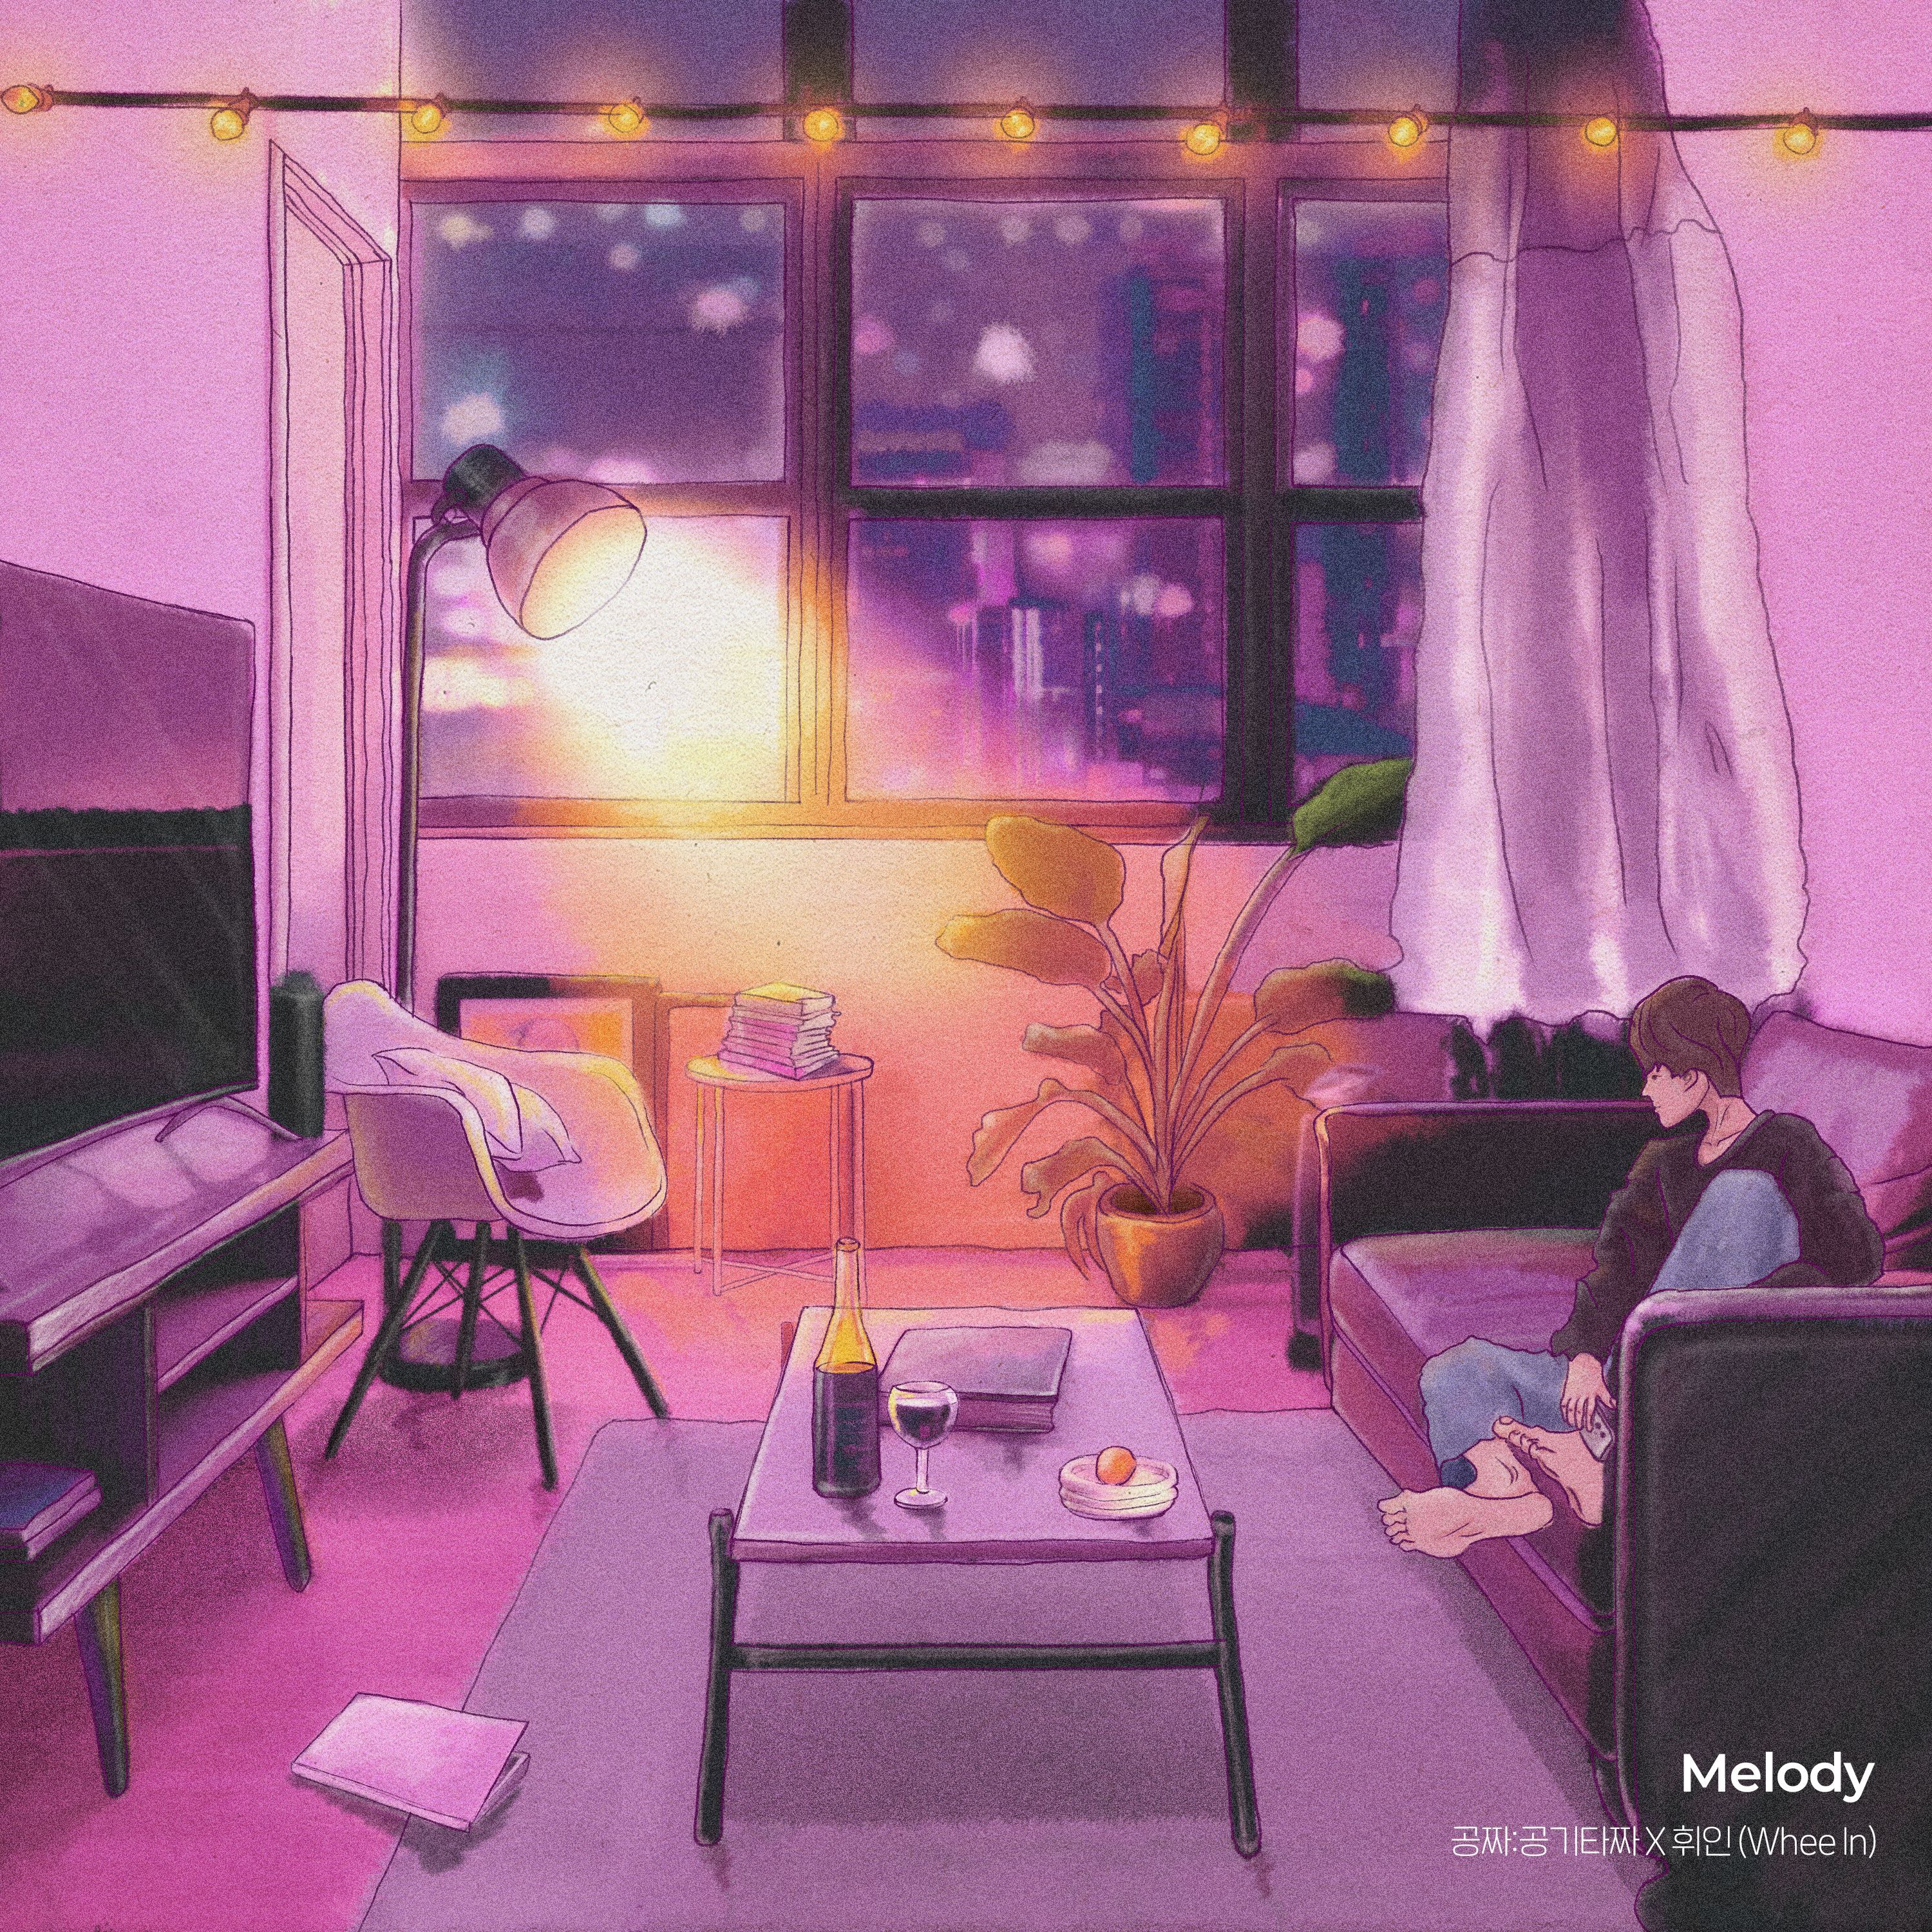 [影音] Melody (Gongzza OST X 輝人)